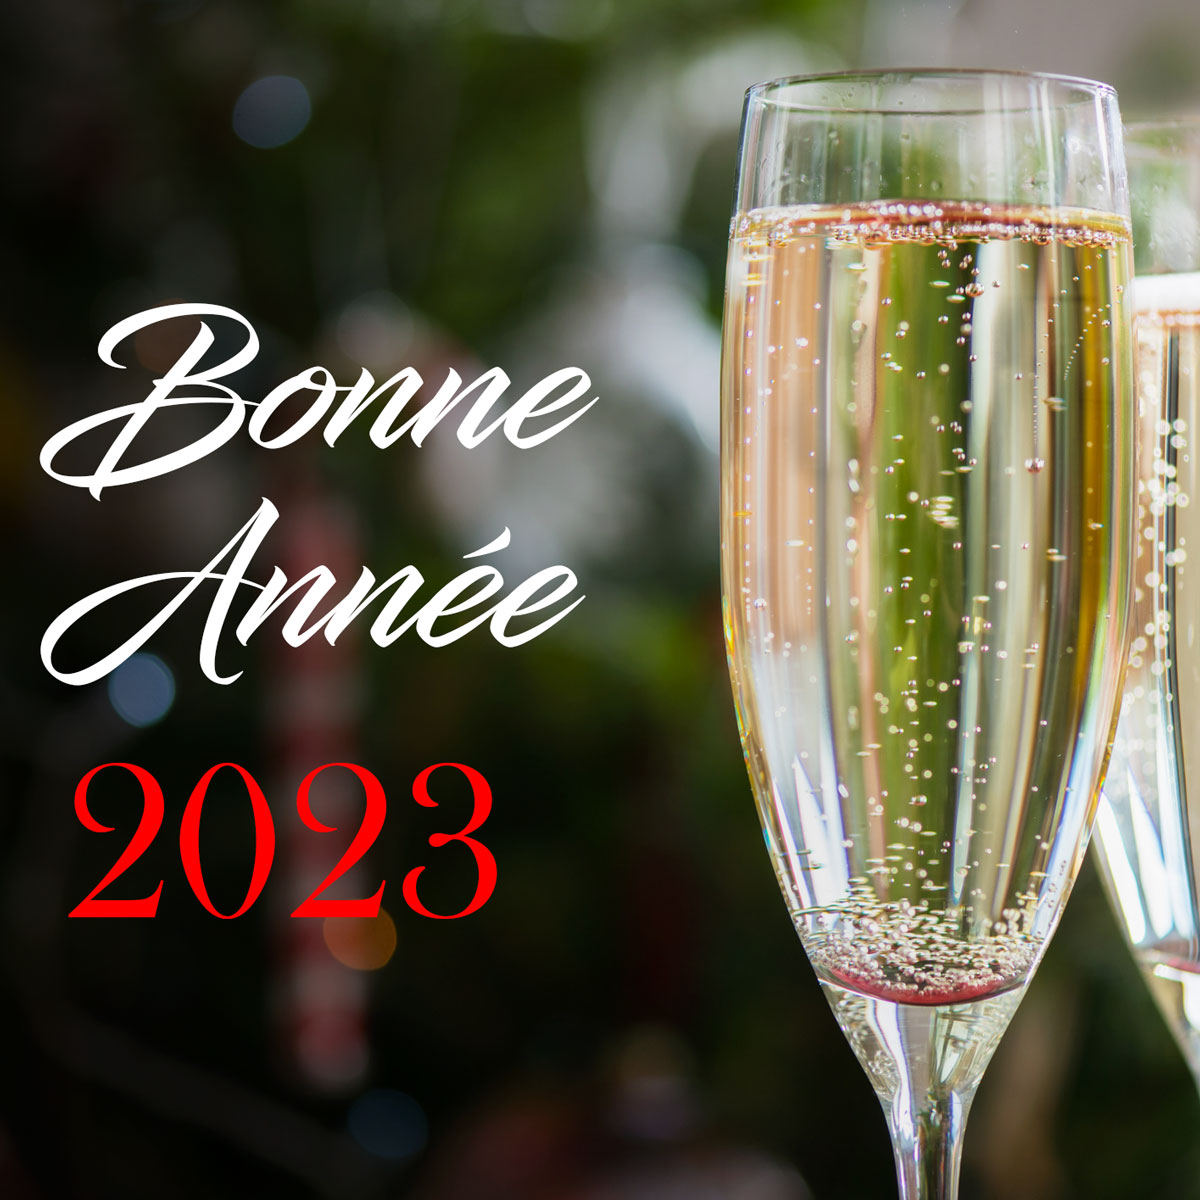 Image de voeux de bonne année avec verre pour porter un toast à la nouvelle année 2023